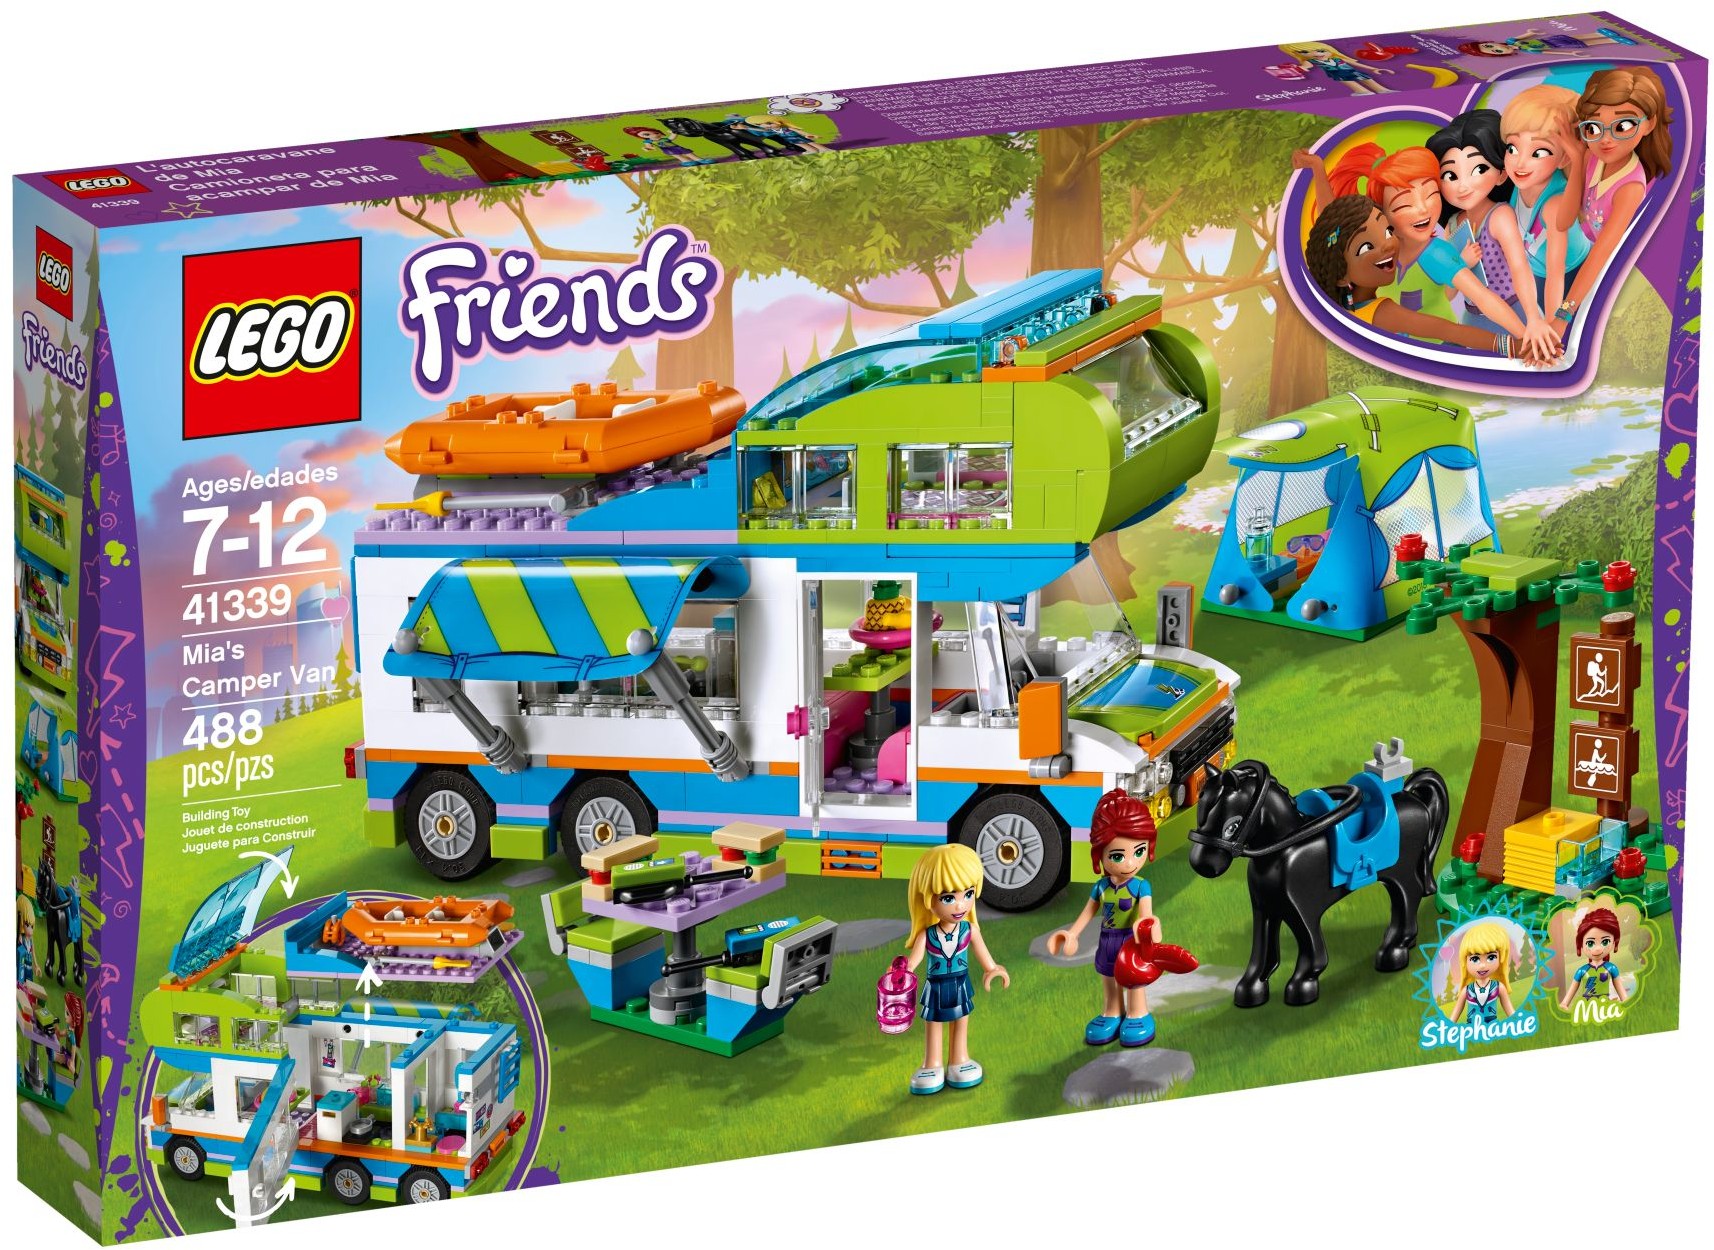 Mia's Camper Van (41339) | LEGO Friends 